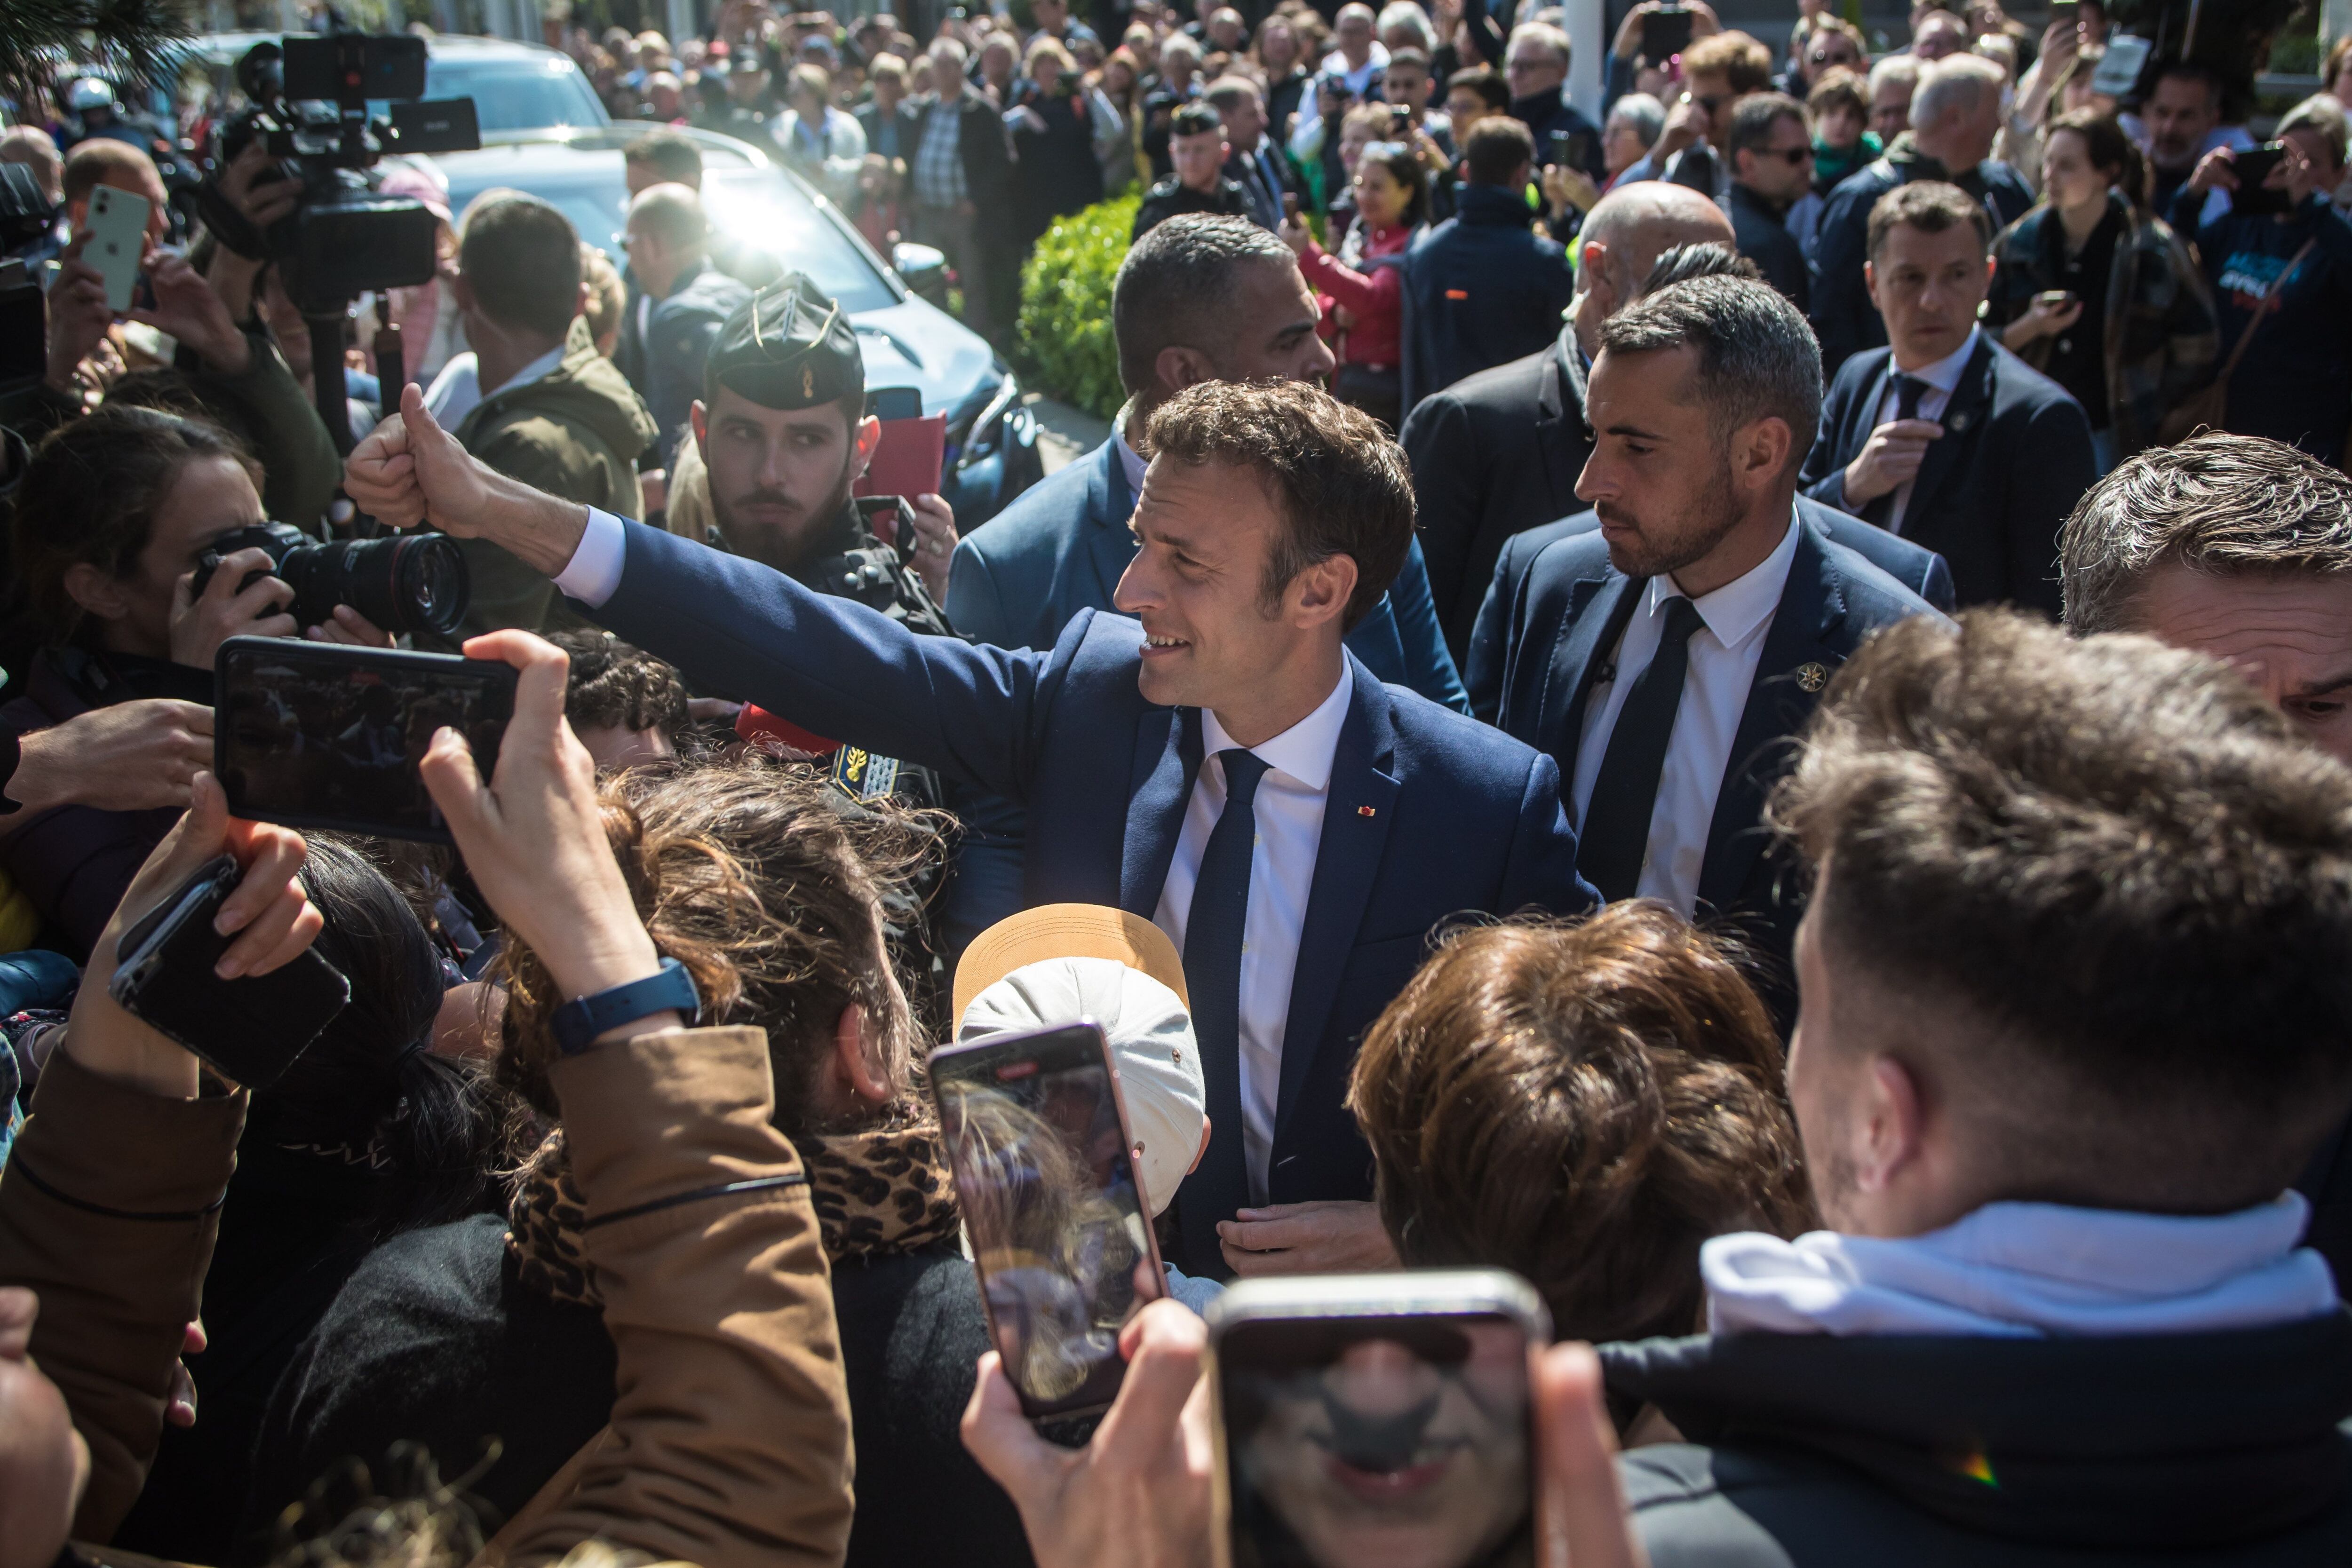 El presidente francés y candidato a la reelección Emmanuel Macron (c) saluda a la gente antes de acudir al colegio electoral en la segunda vuelta de las elecciones presidenciales francesas, en Le Touquet, Francia. EFE/EPA/Christophe Petit Tesson 